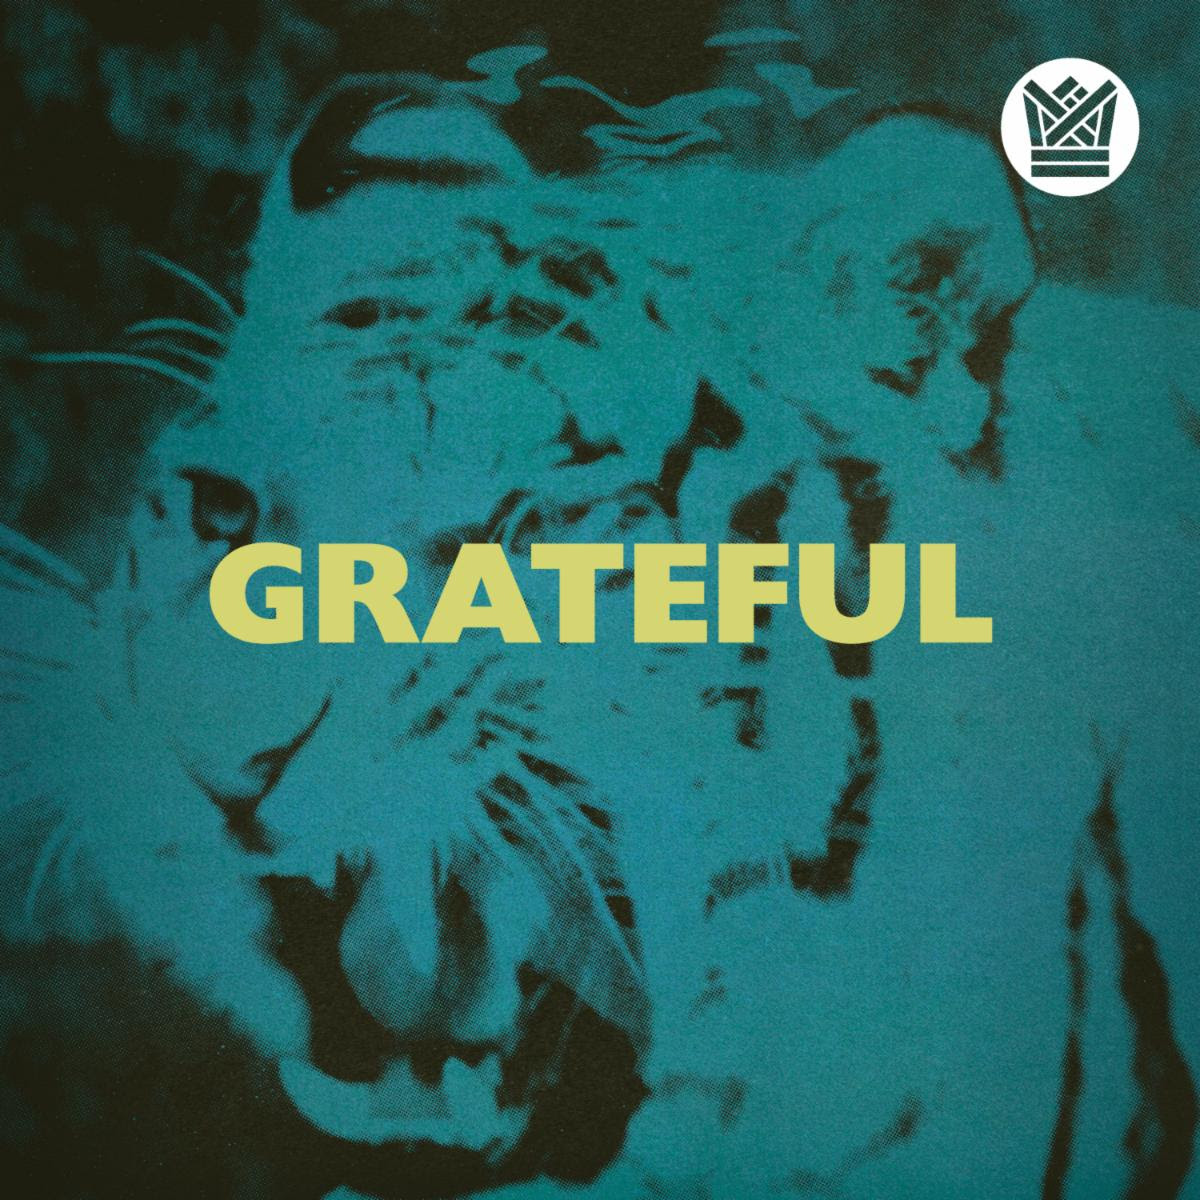 Black Thought & El Michels Affair Announce Collaborative Album, Drop “Grateful” Single